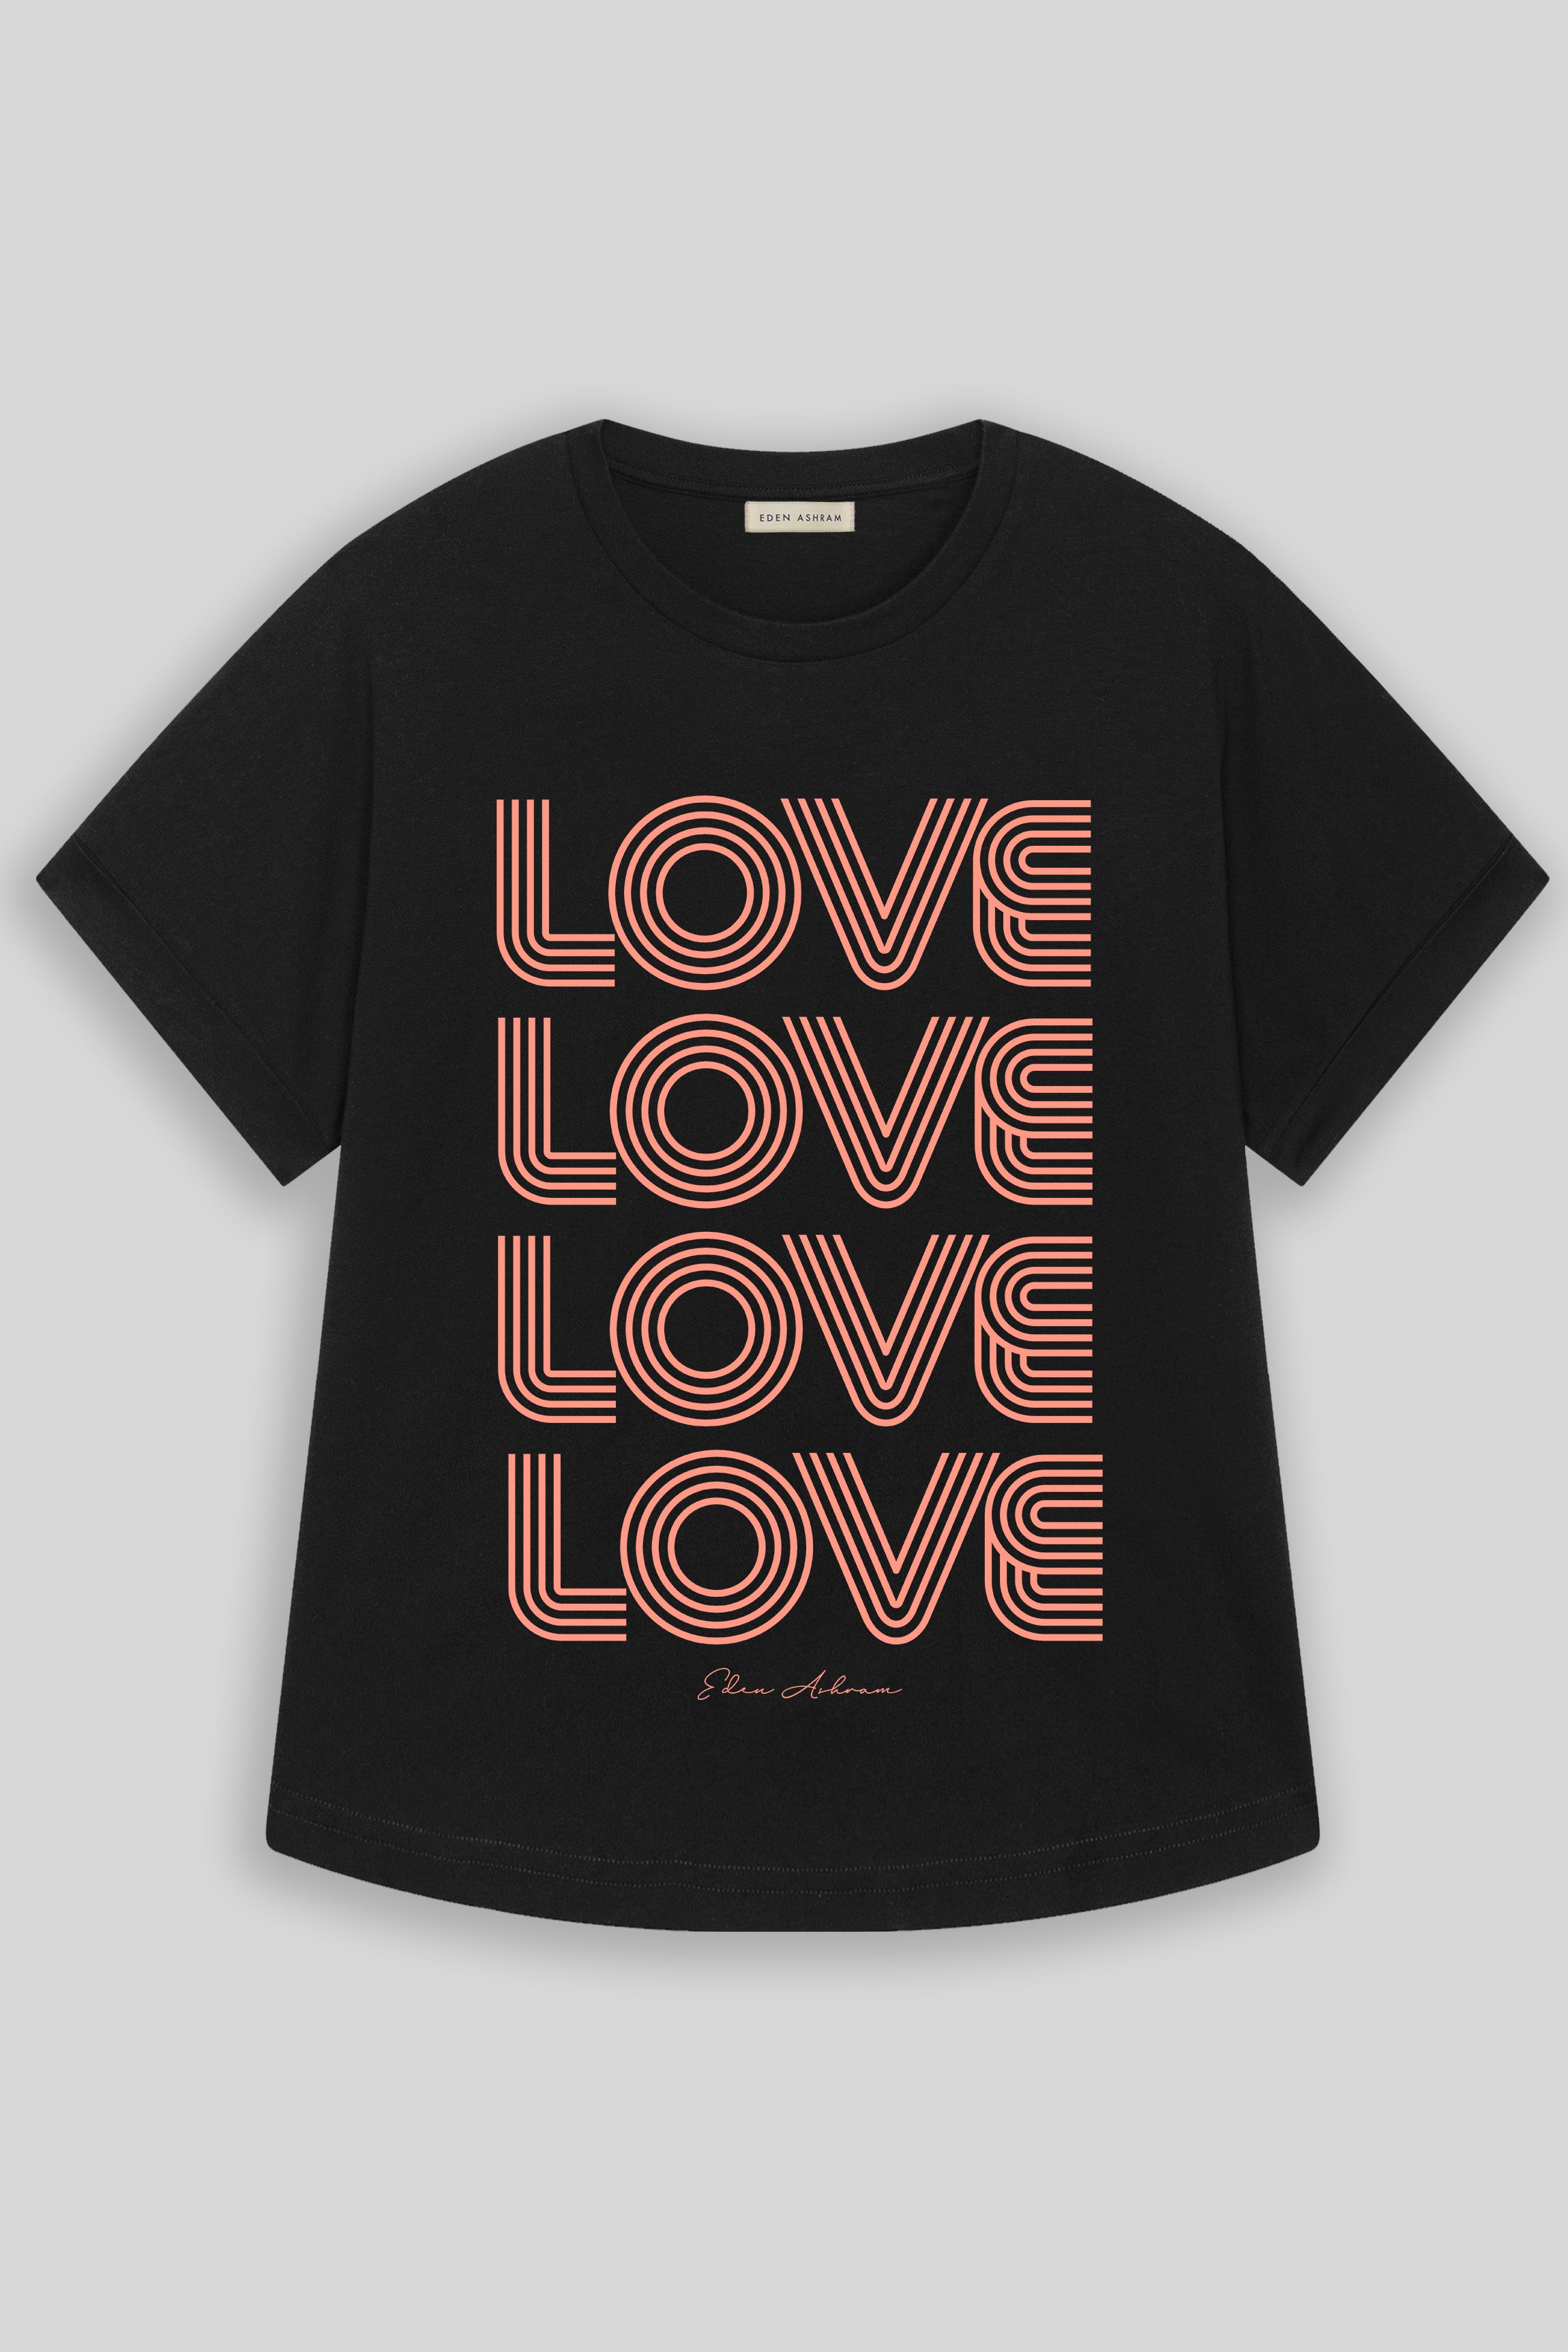 EDEN ASHRAM 4 Love Oversized Premium Rolled Sleeve T-Shirt Black